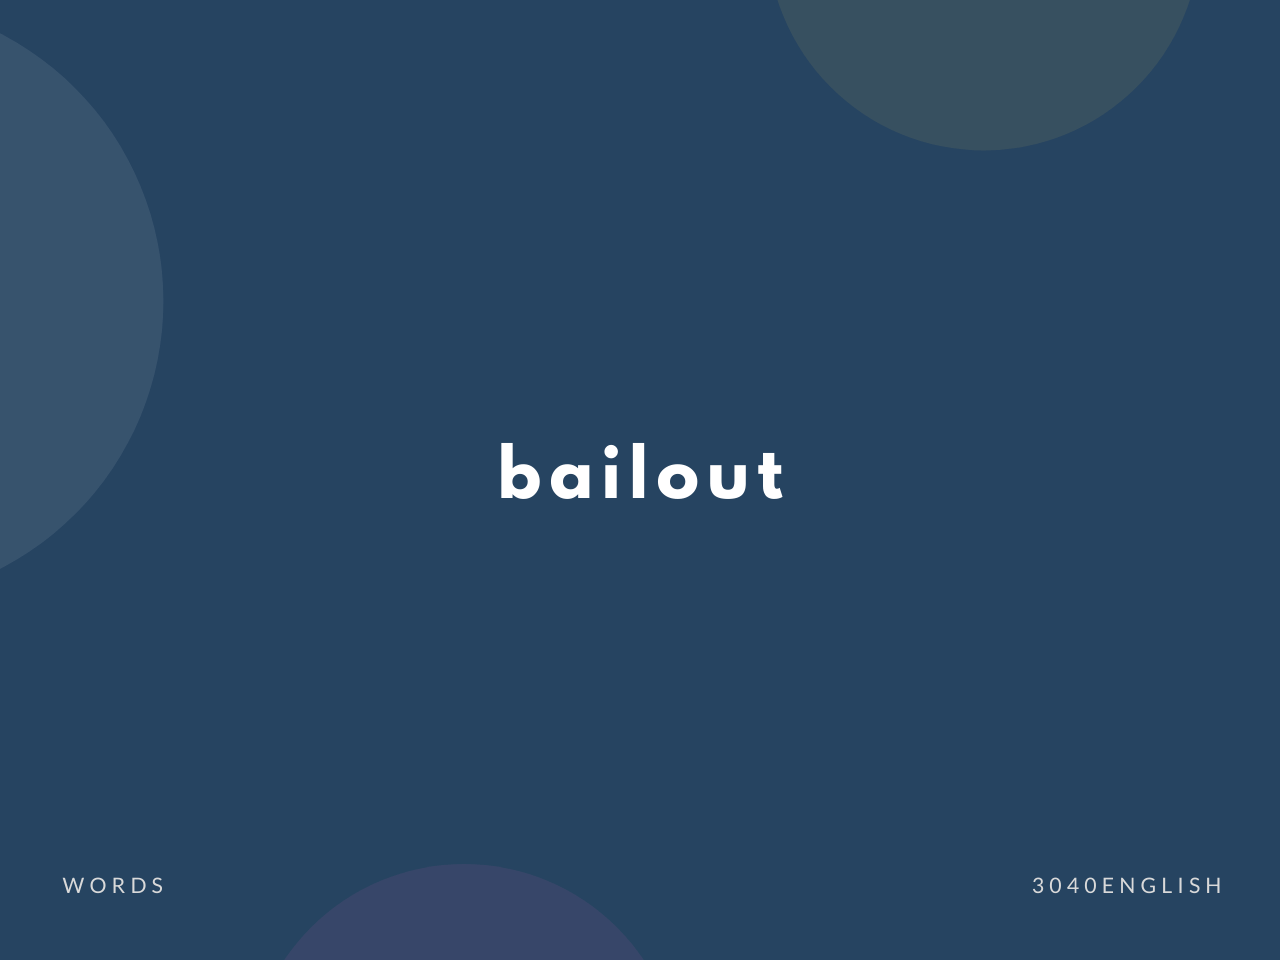 【ベイルアウト】bailout の意味と簡単な使い方【英語表現・例文あり】